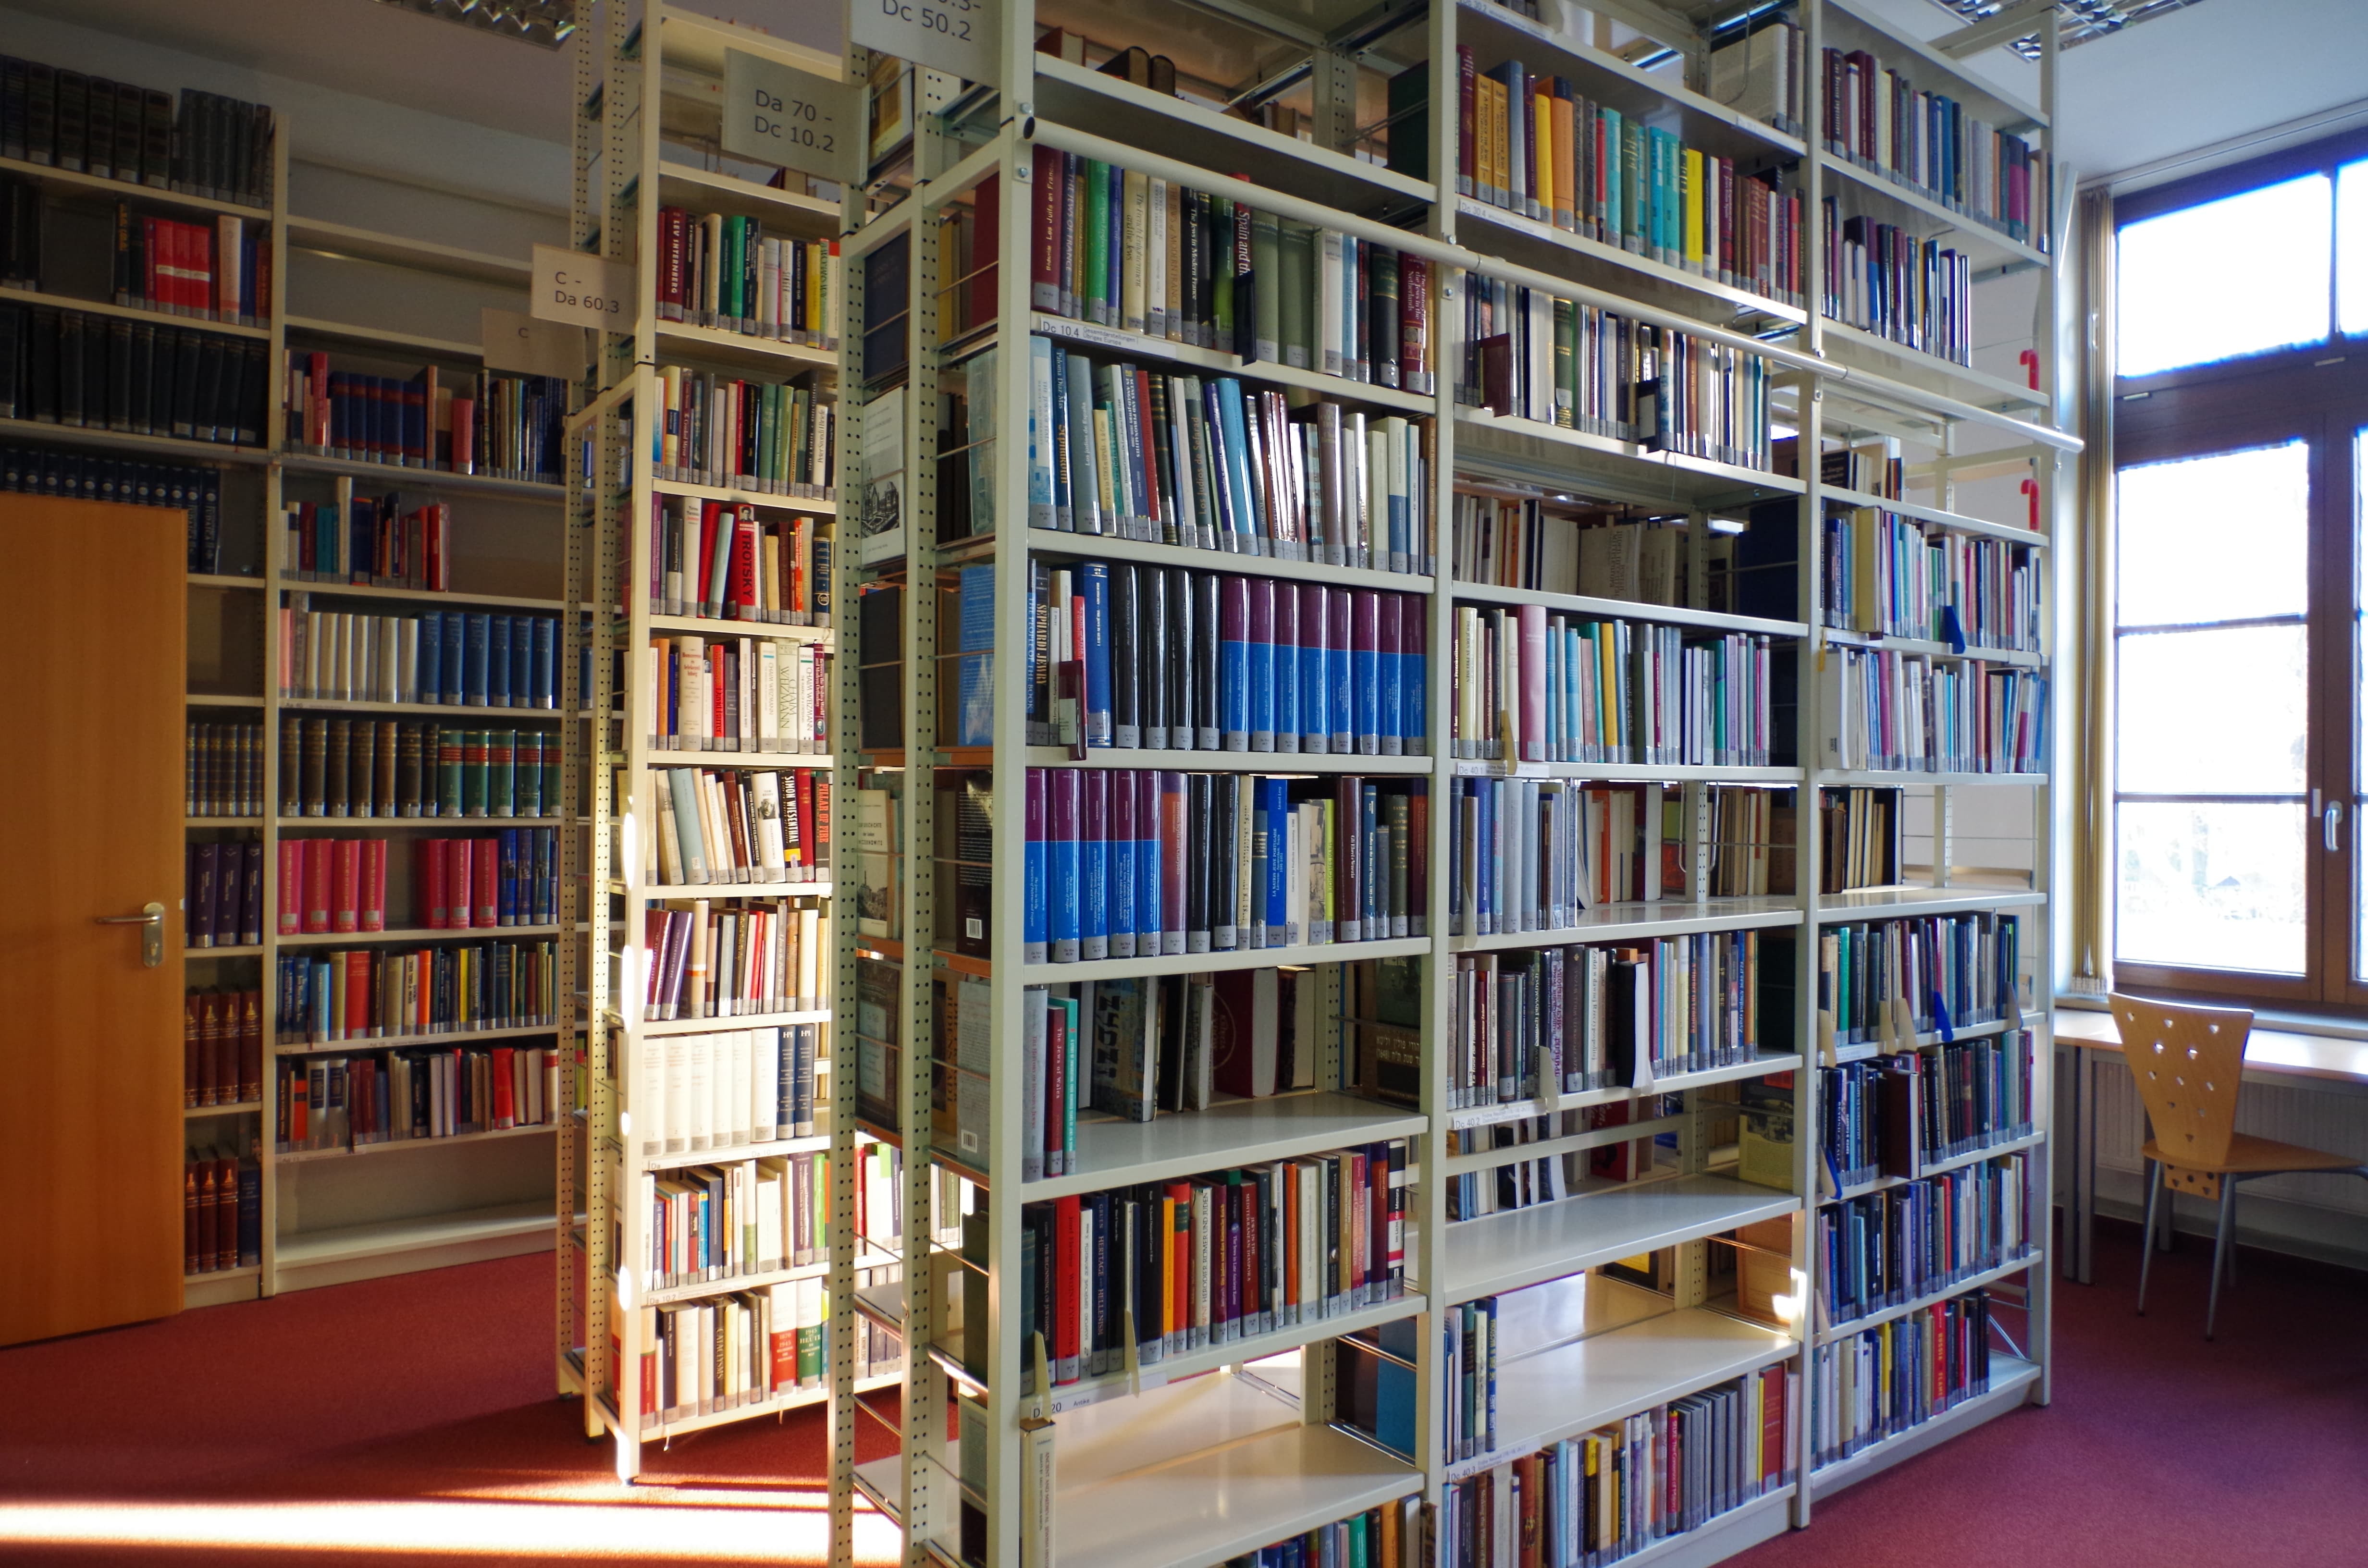 Blick in die Bibliothek des Instituts, mehrere Regele mit Büchern DI_Bibliothek_Benutzung_Header_web.jpg